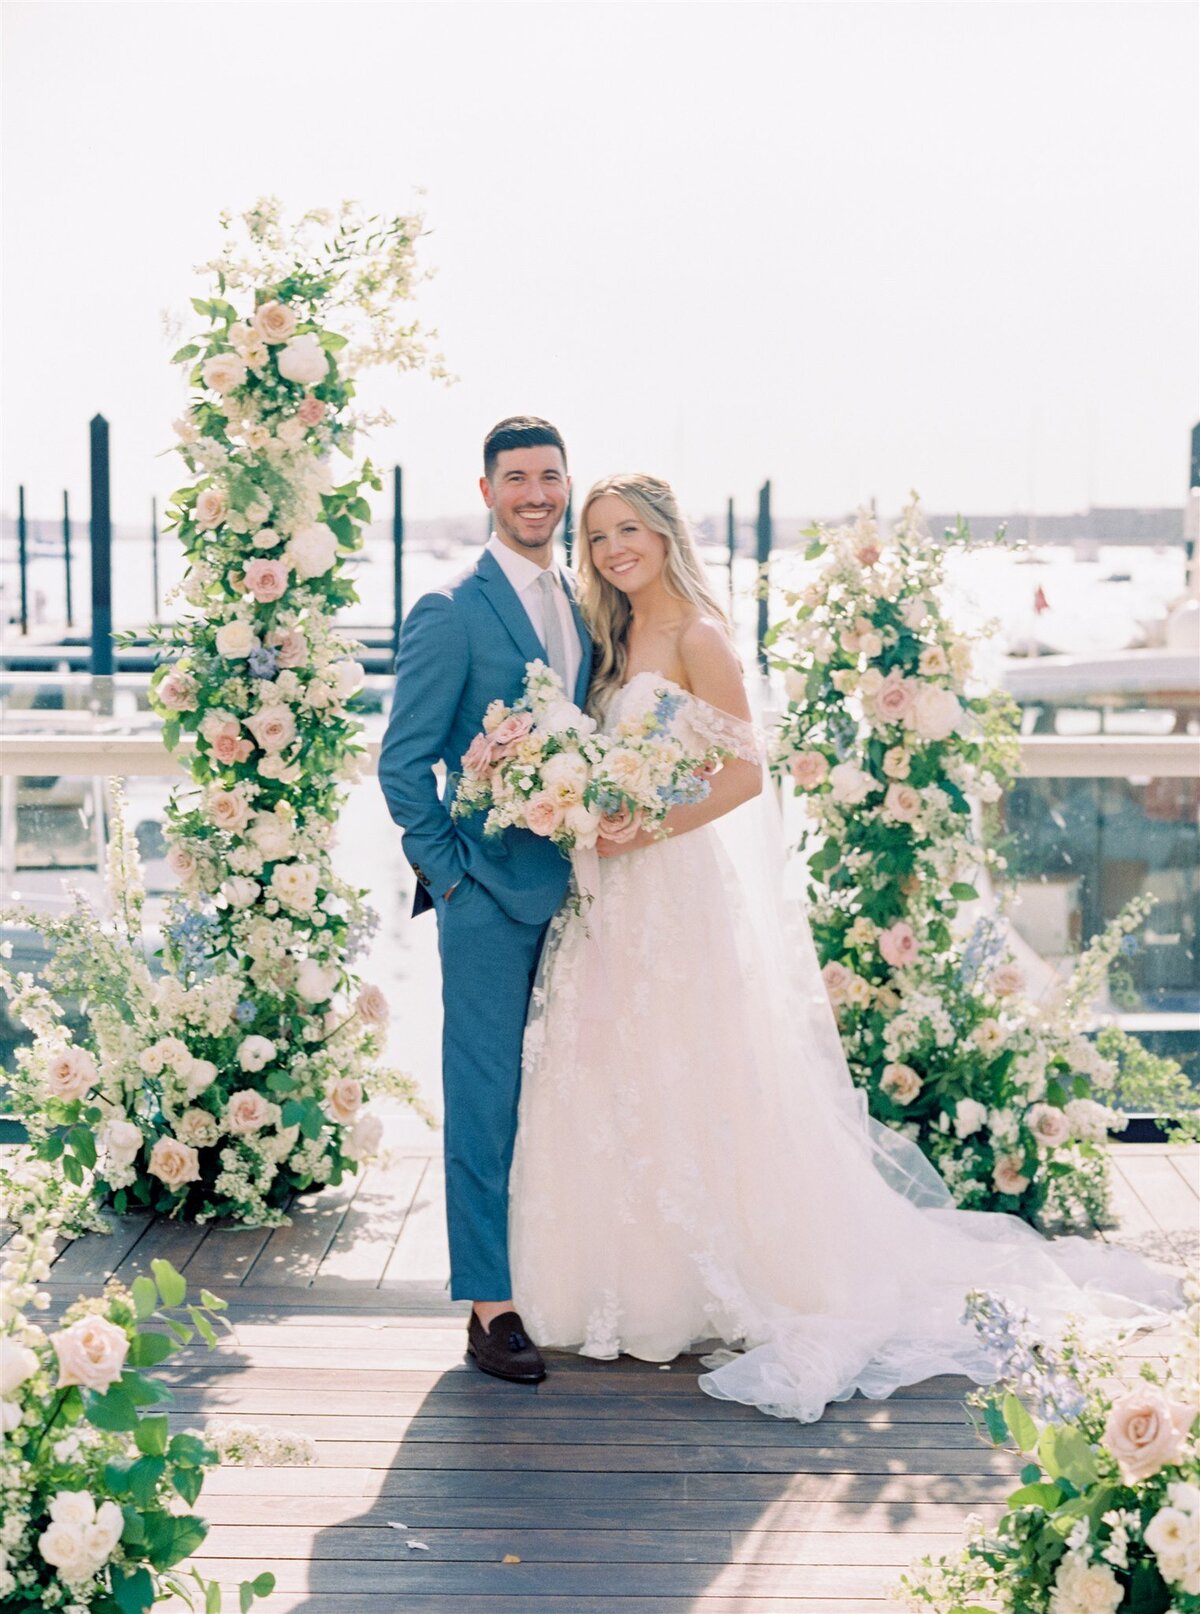 Kate-Murtaugh-Events-Newport-elopement-wedding-planner-couple-dock-altar-portrait-bride-groom